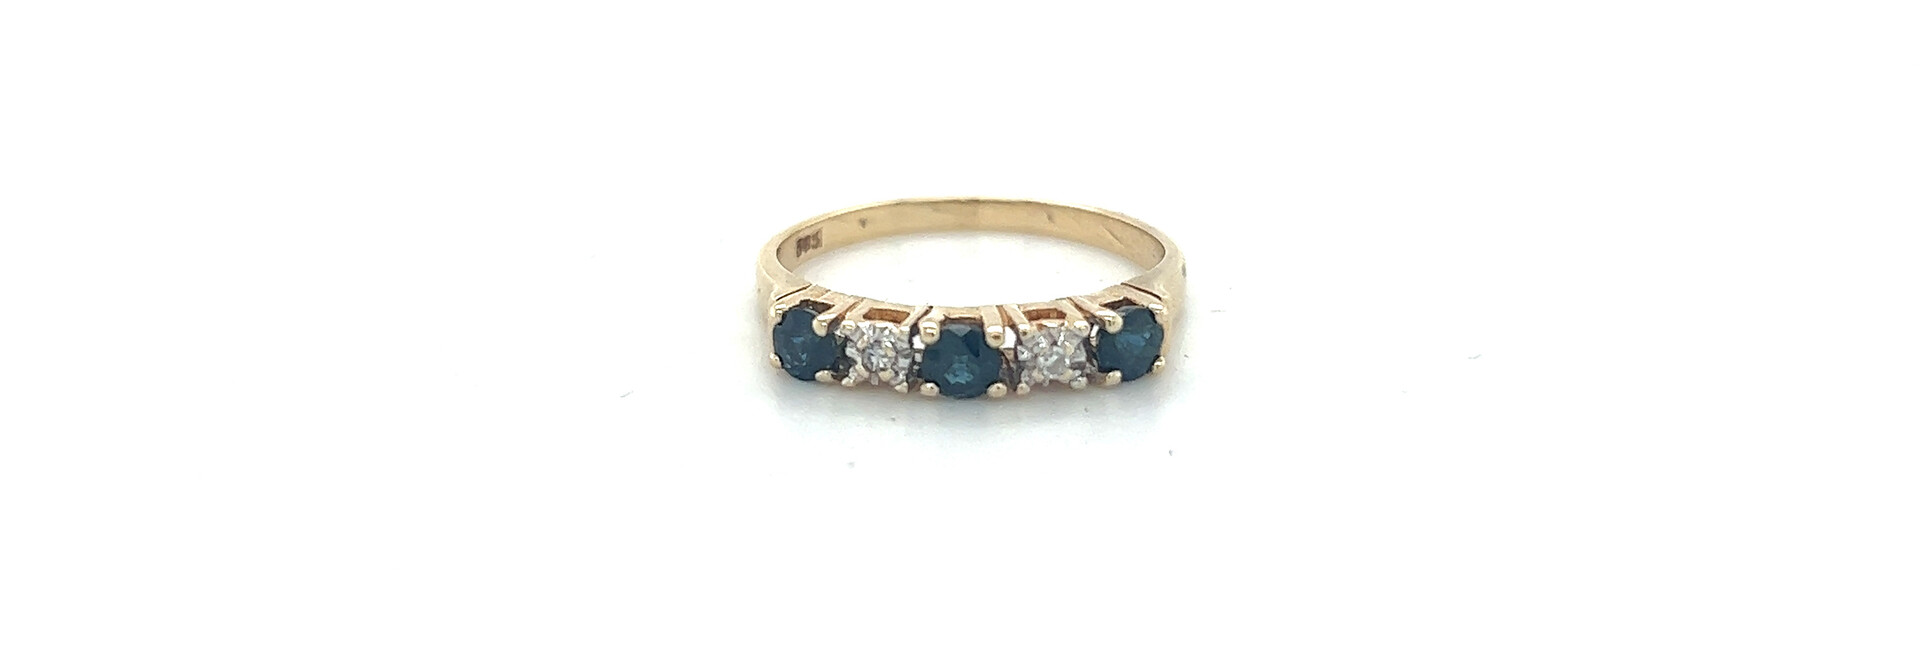 Ring bezet met 2 diamanten en 3 blauwe edelstenen